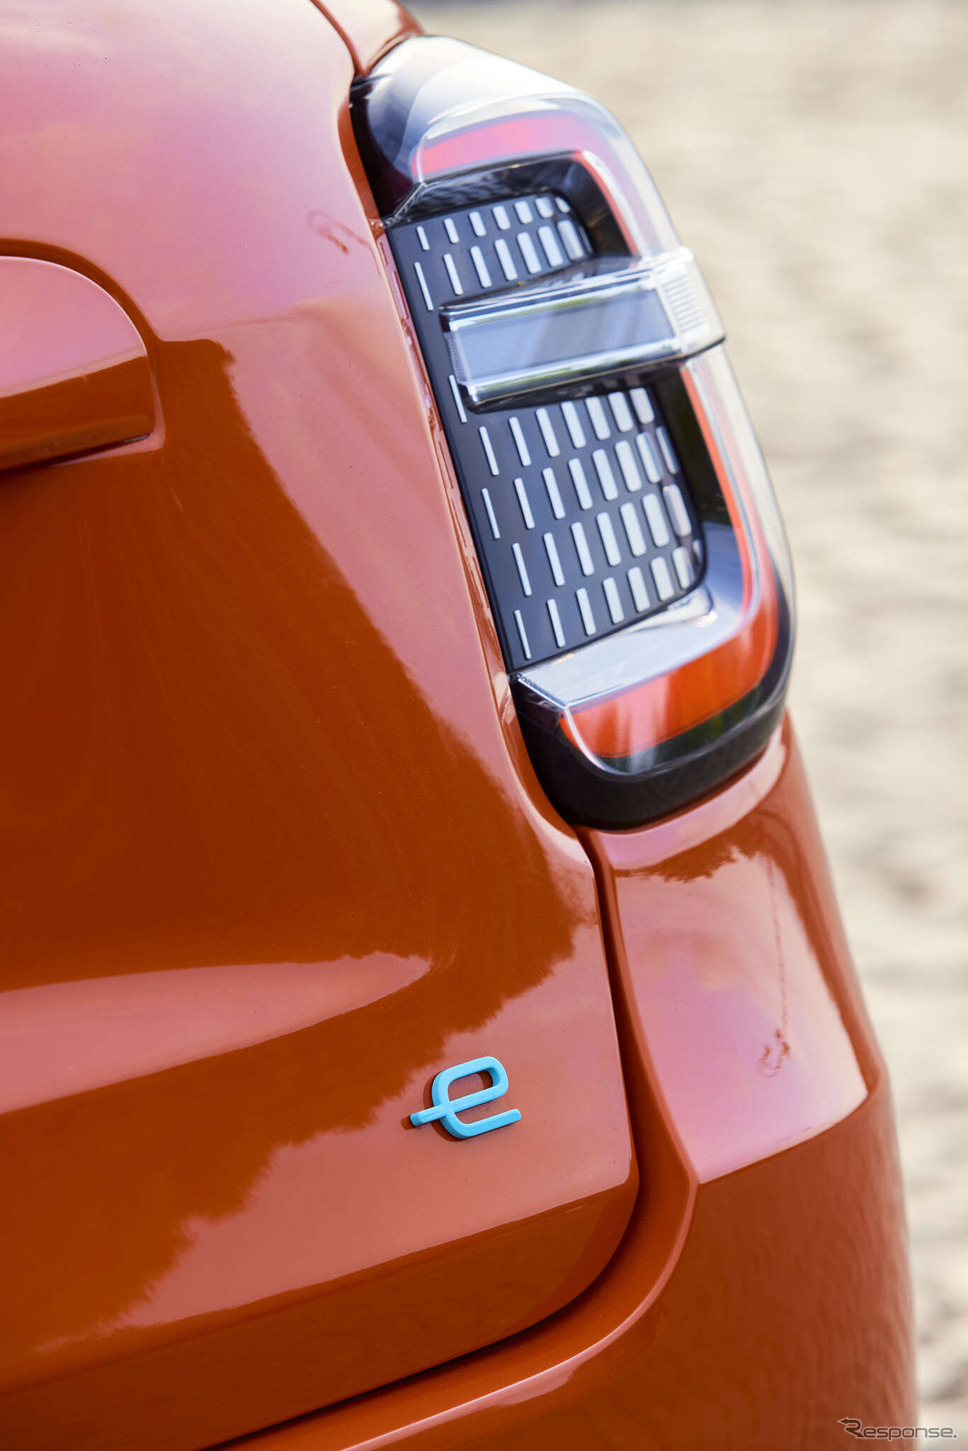 フィアット『600e』発表、コンパクト電動SUVの新型…500eに続く新世代EV